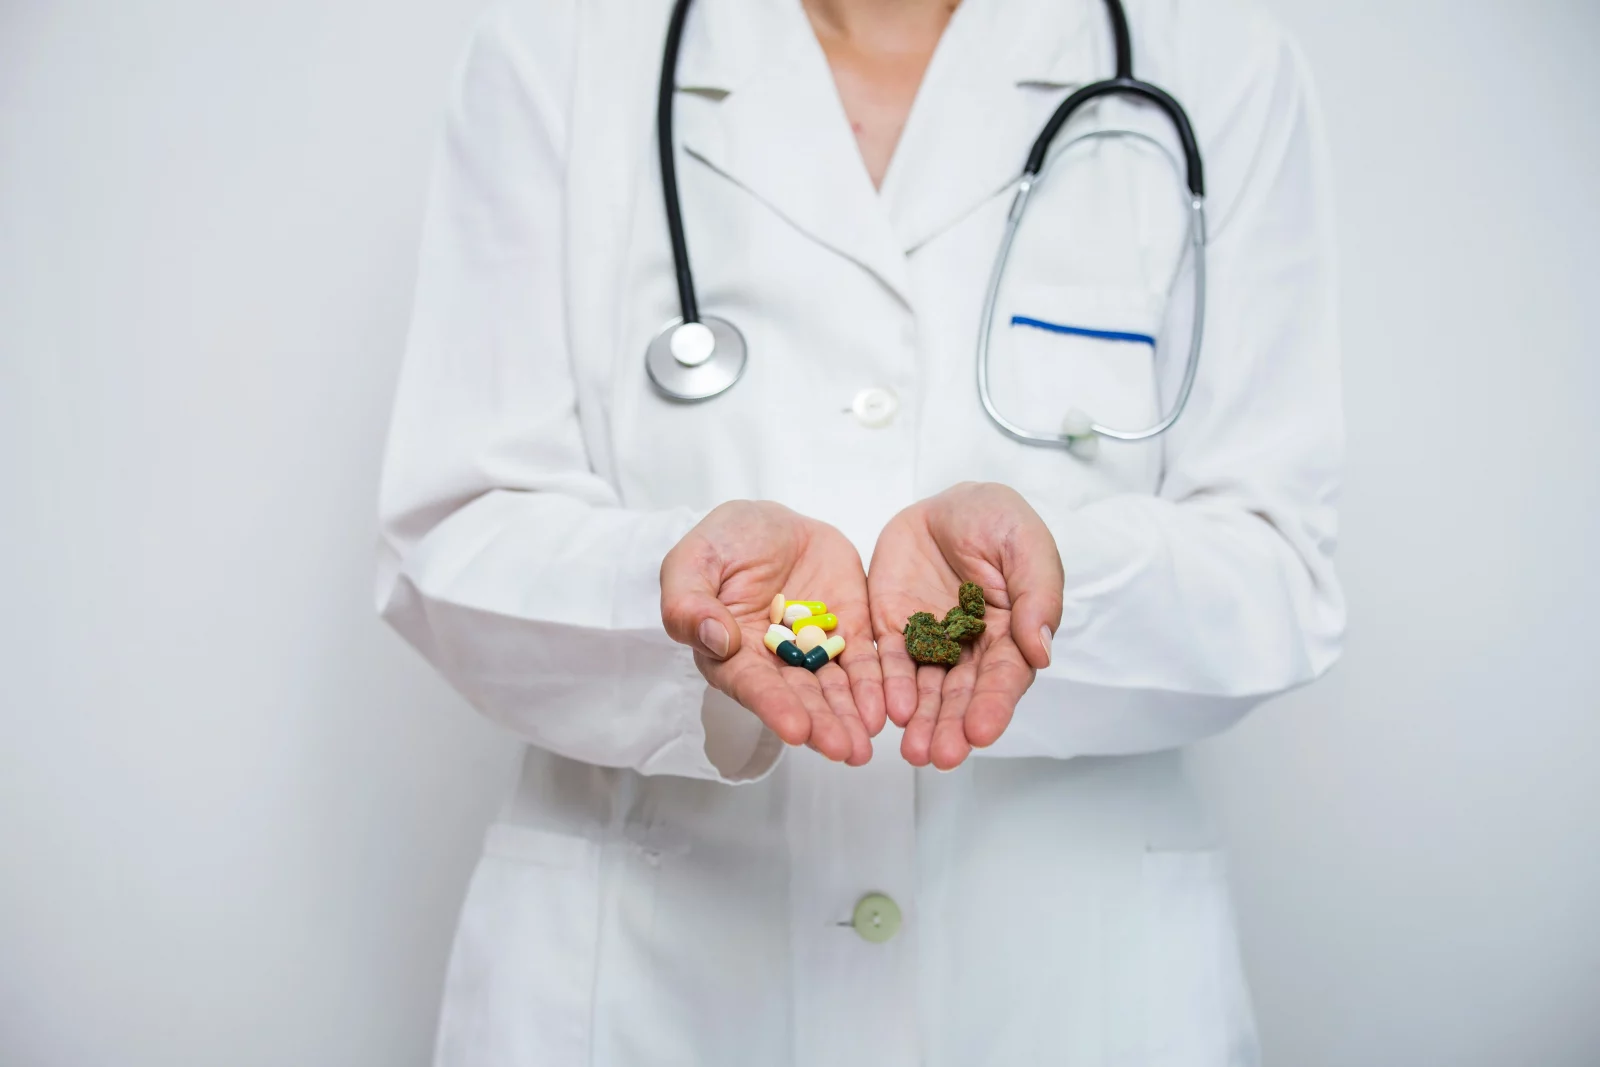 comparaison des analgésiques : pilules et cannabis